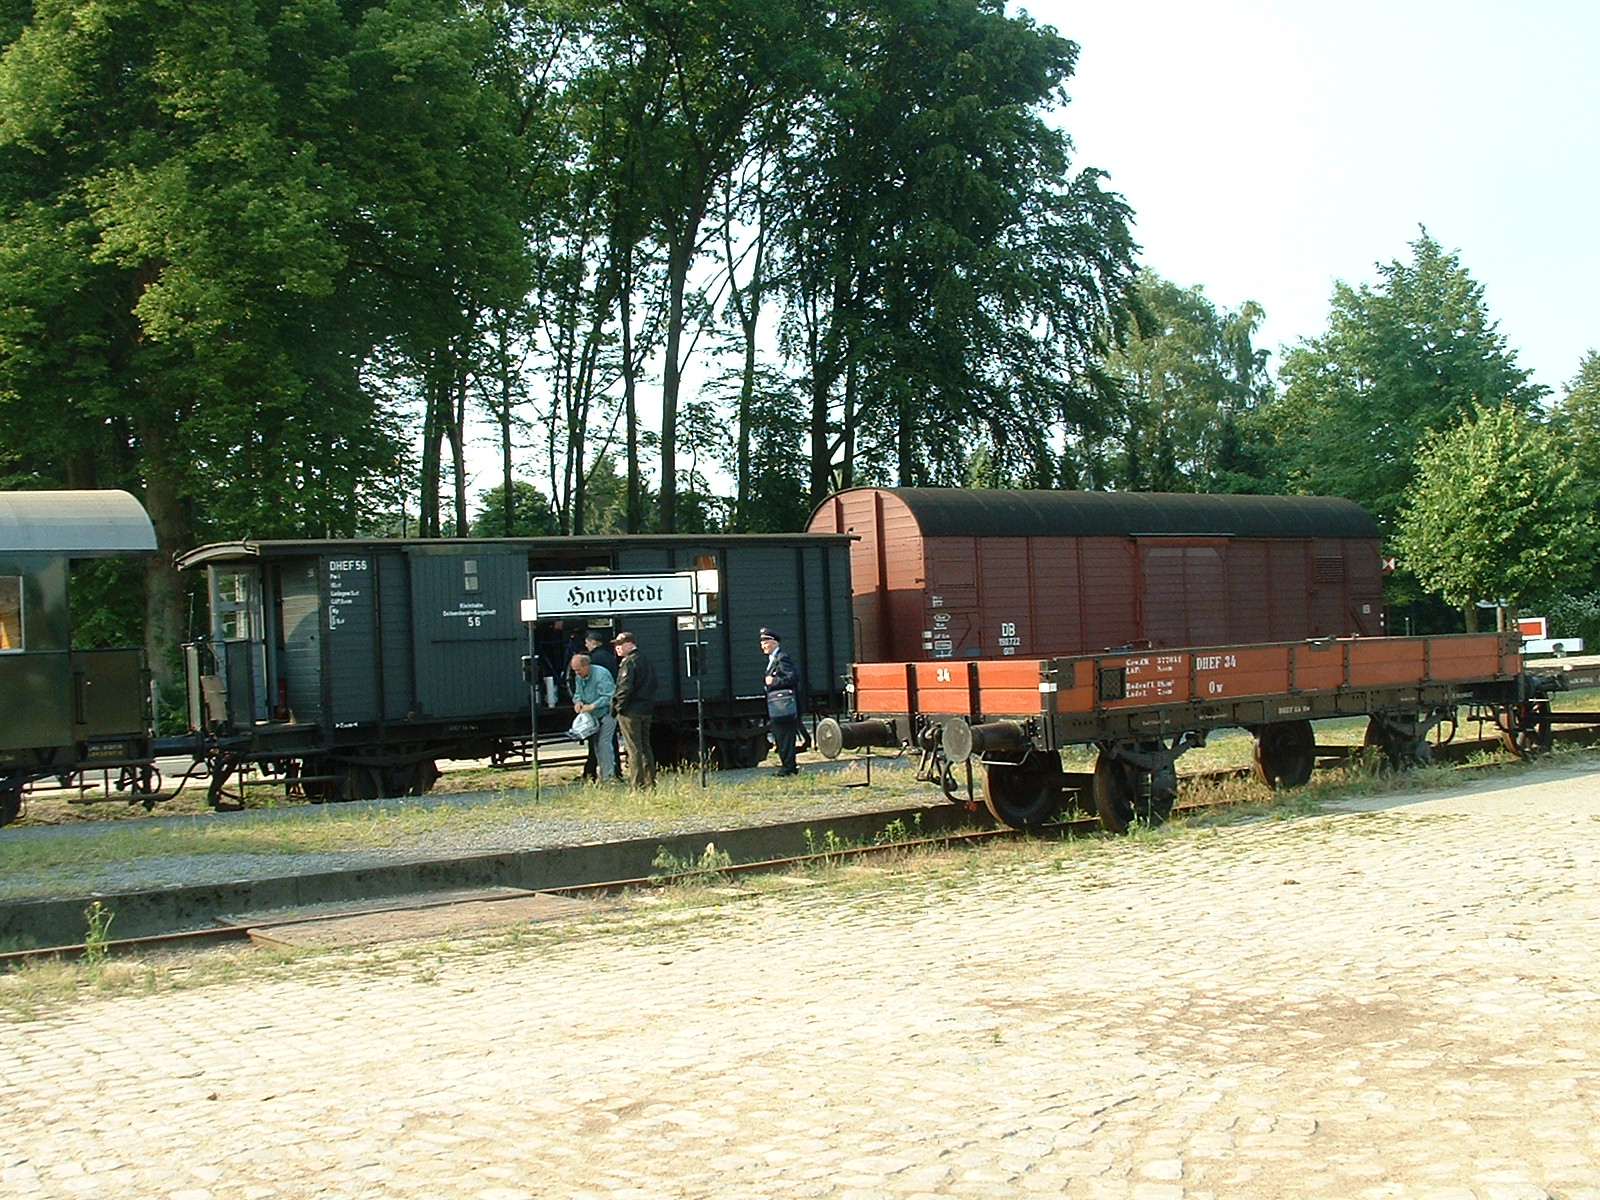 Das Eisenbahnfreunde Dienstpersonal am Bahnhof Harpstedt